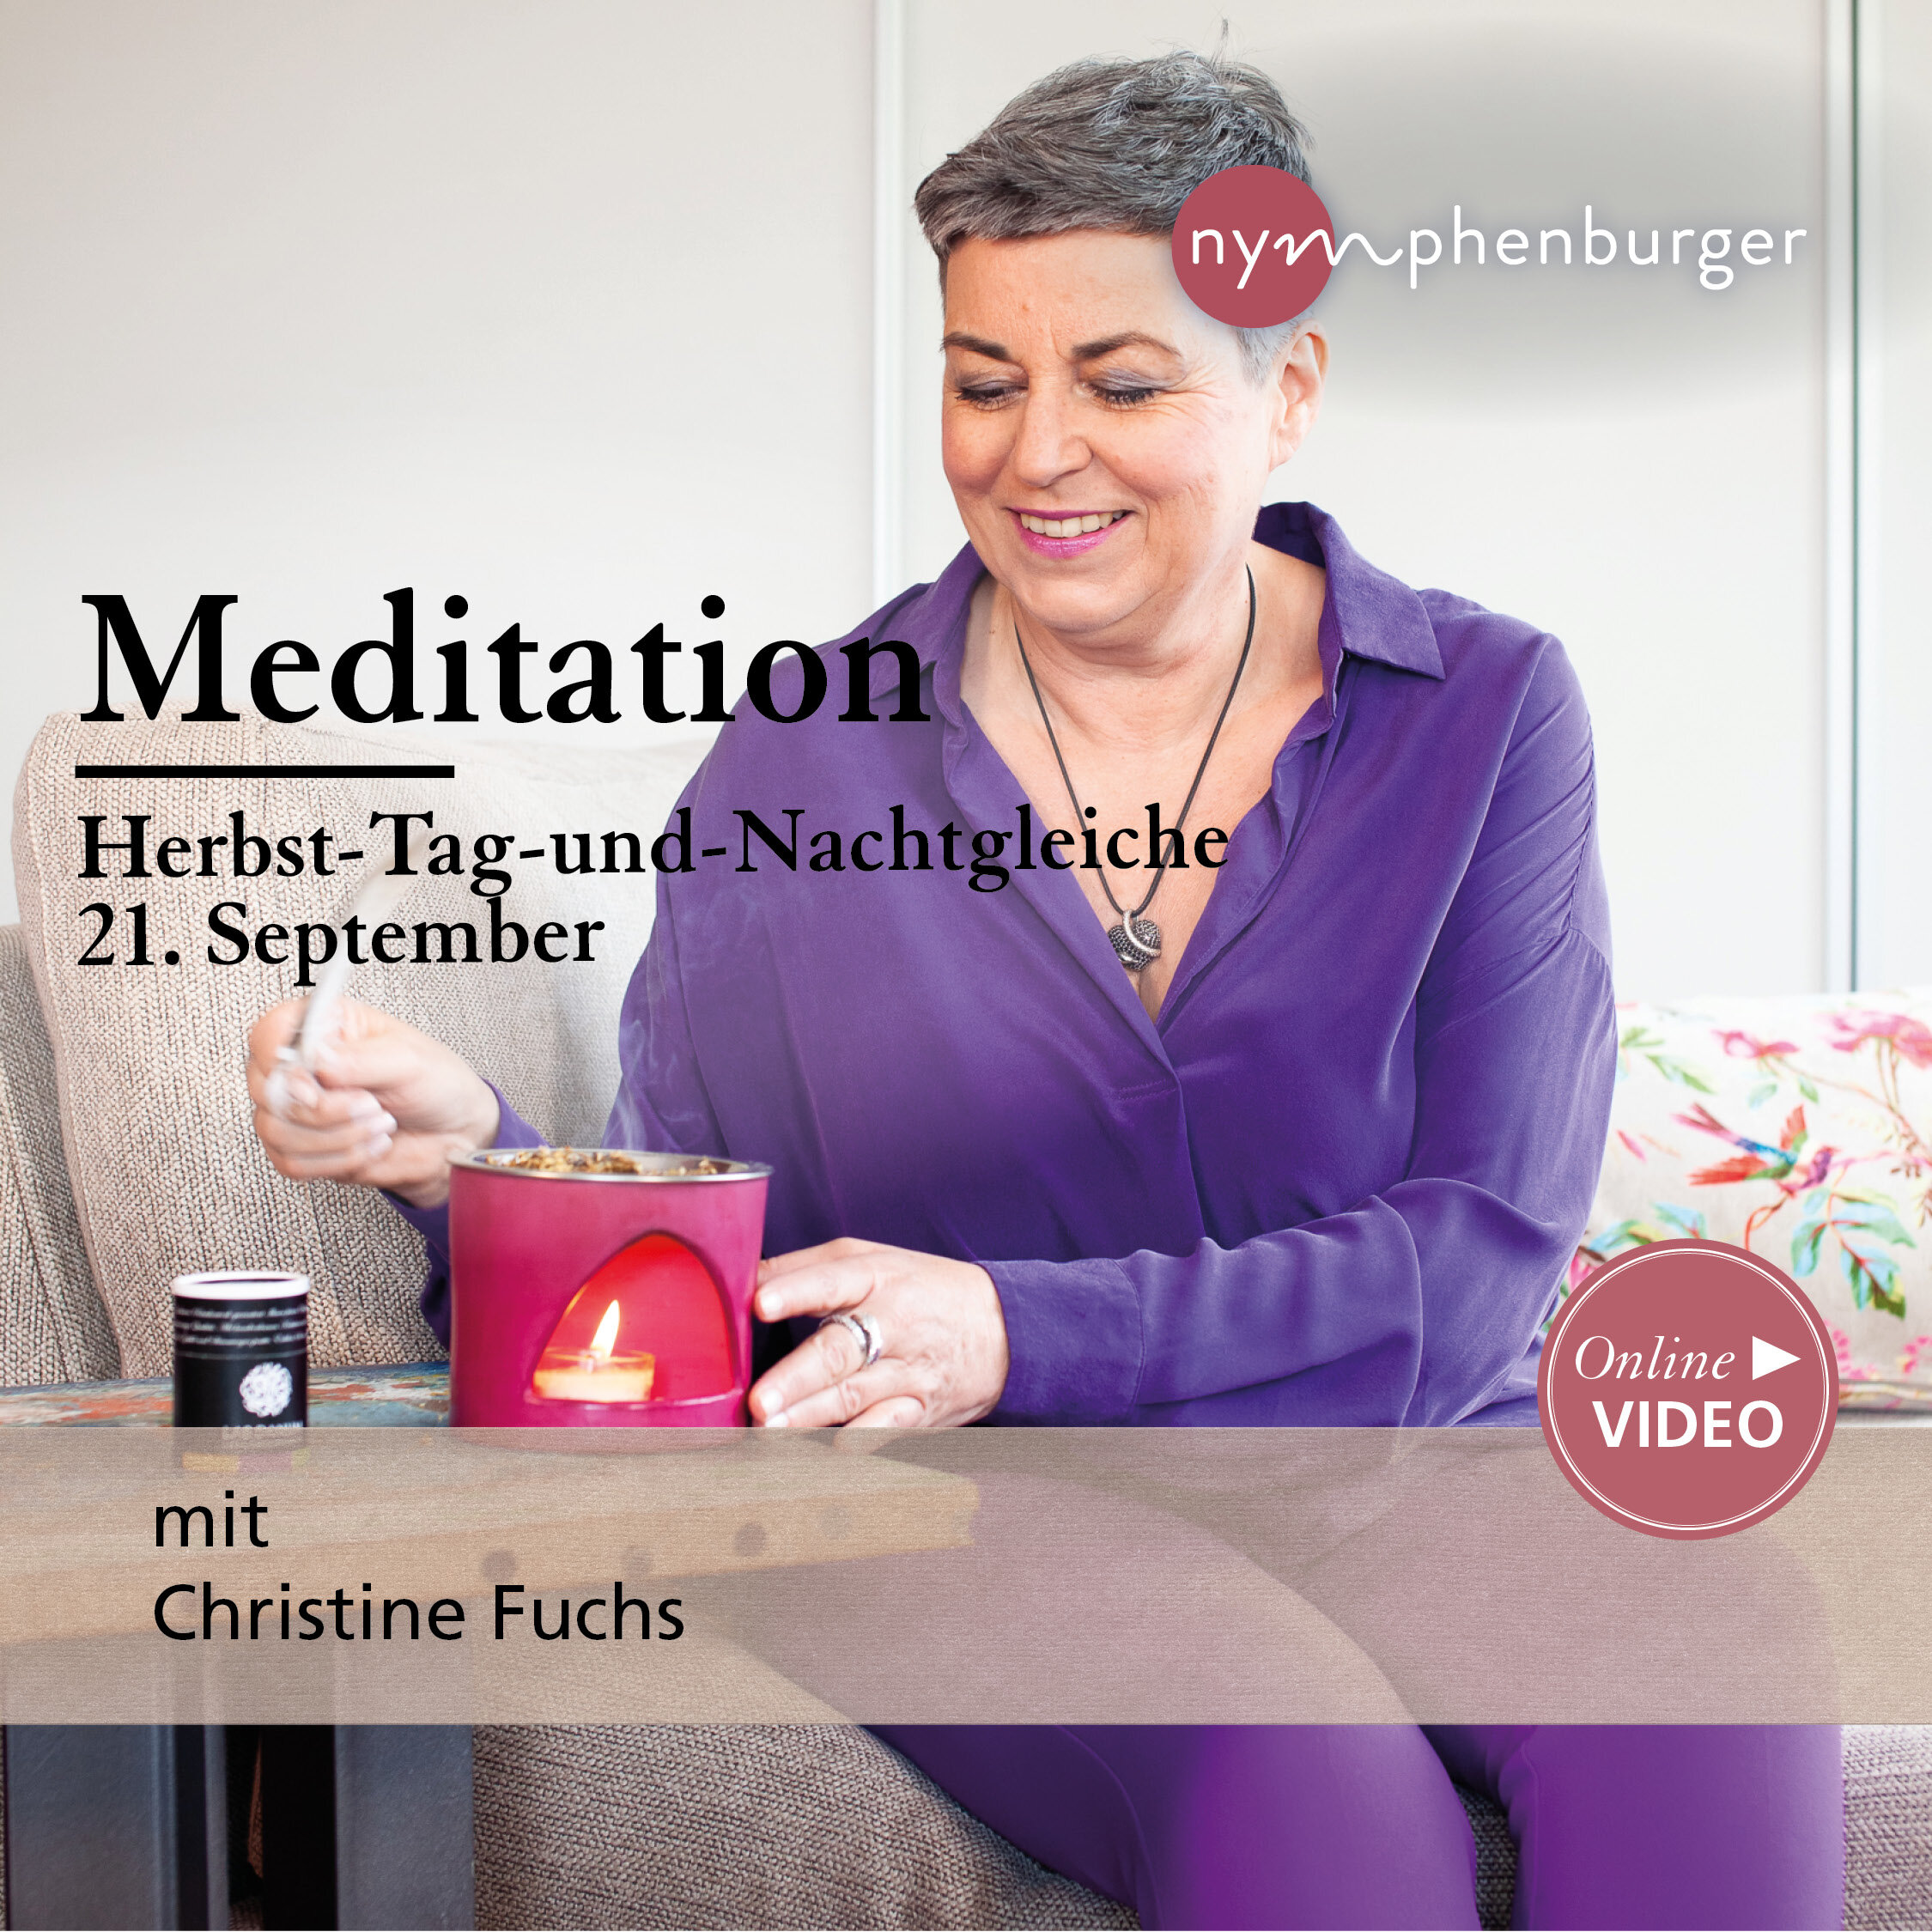 Meditation: Herbst-Tag-und-Nachtgleiche (21. September)